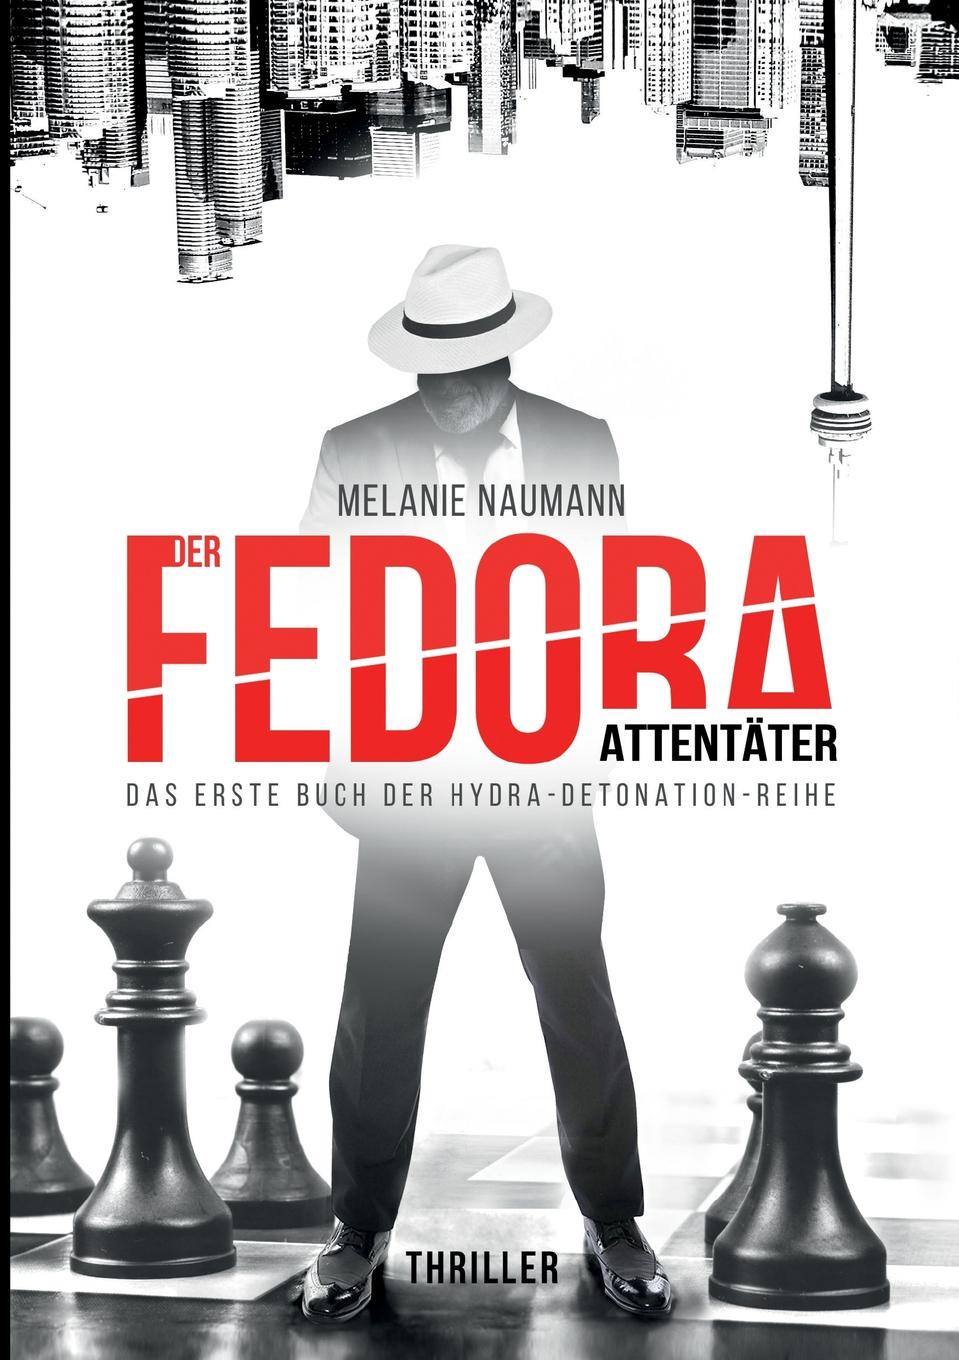 Der Fedora Attentater